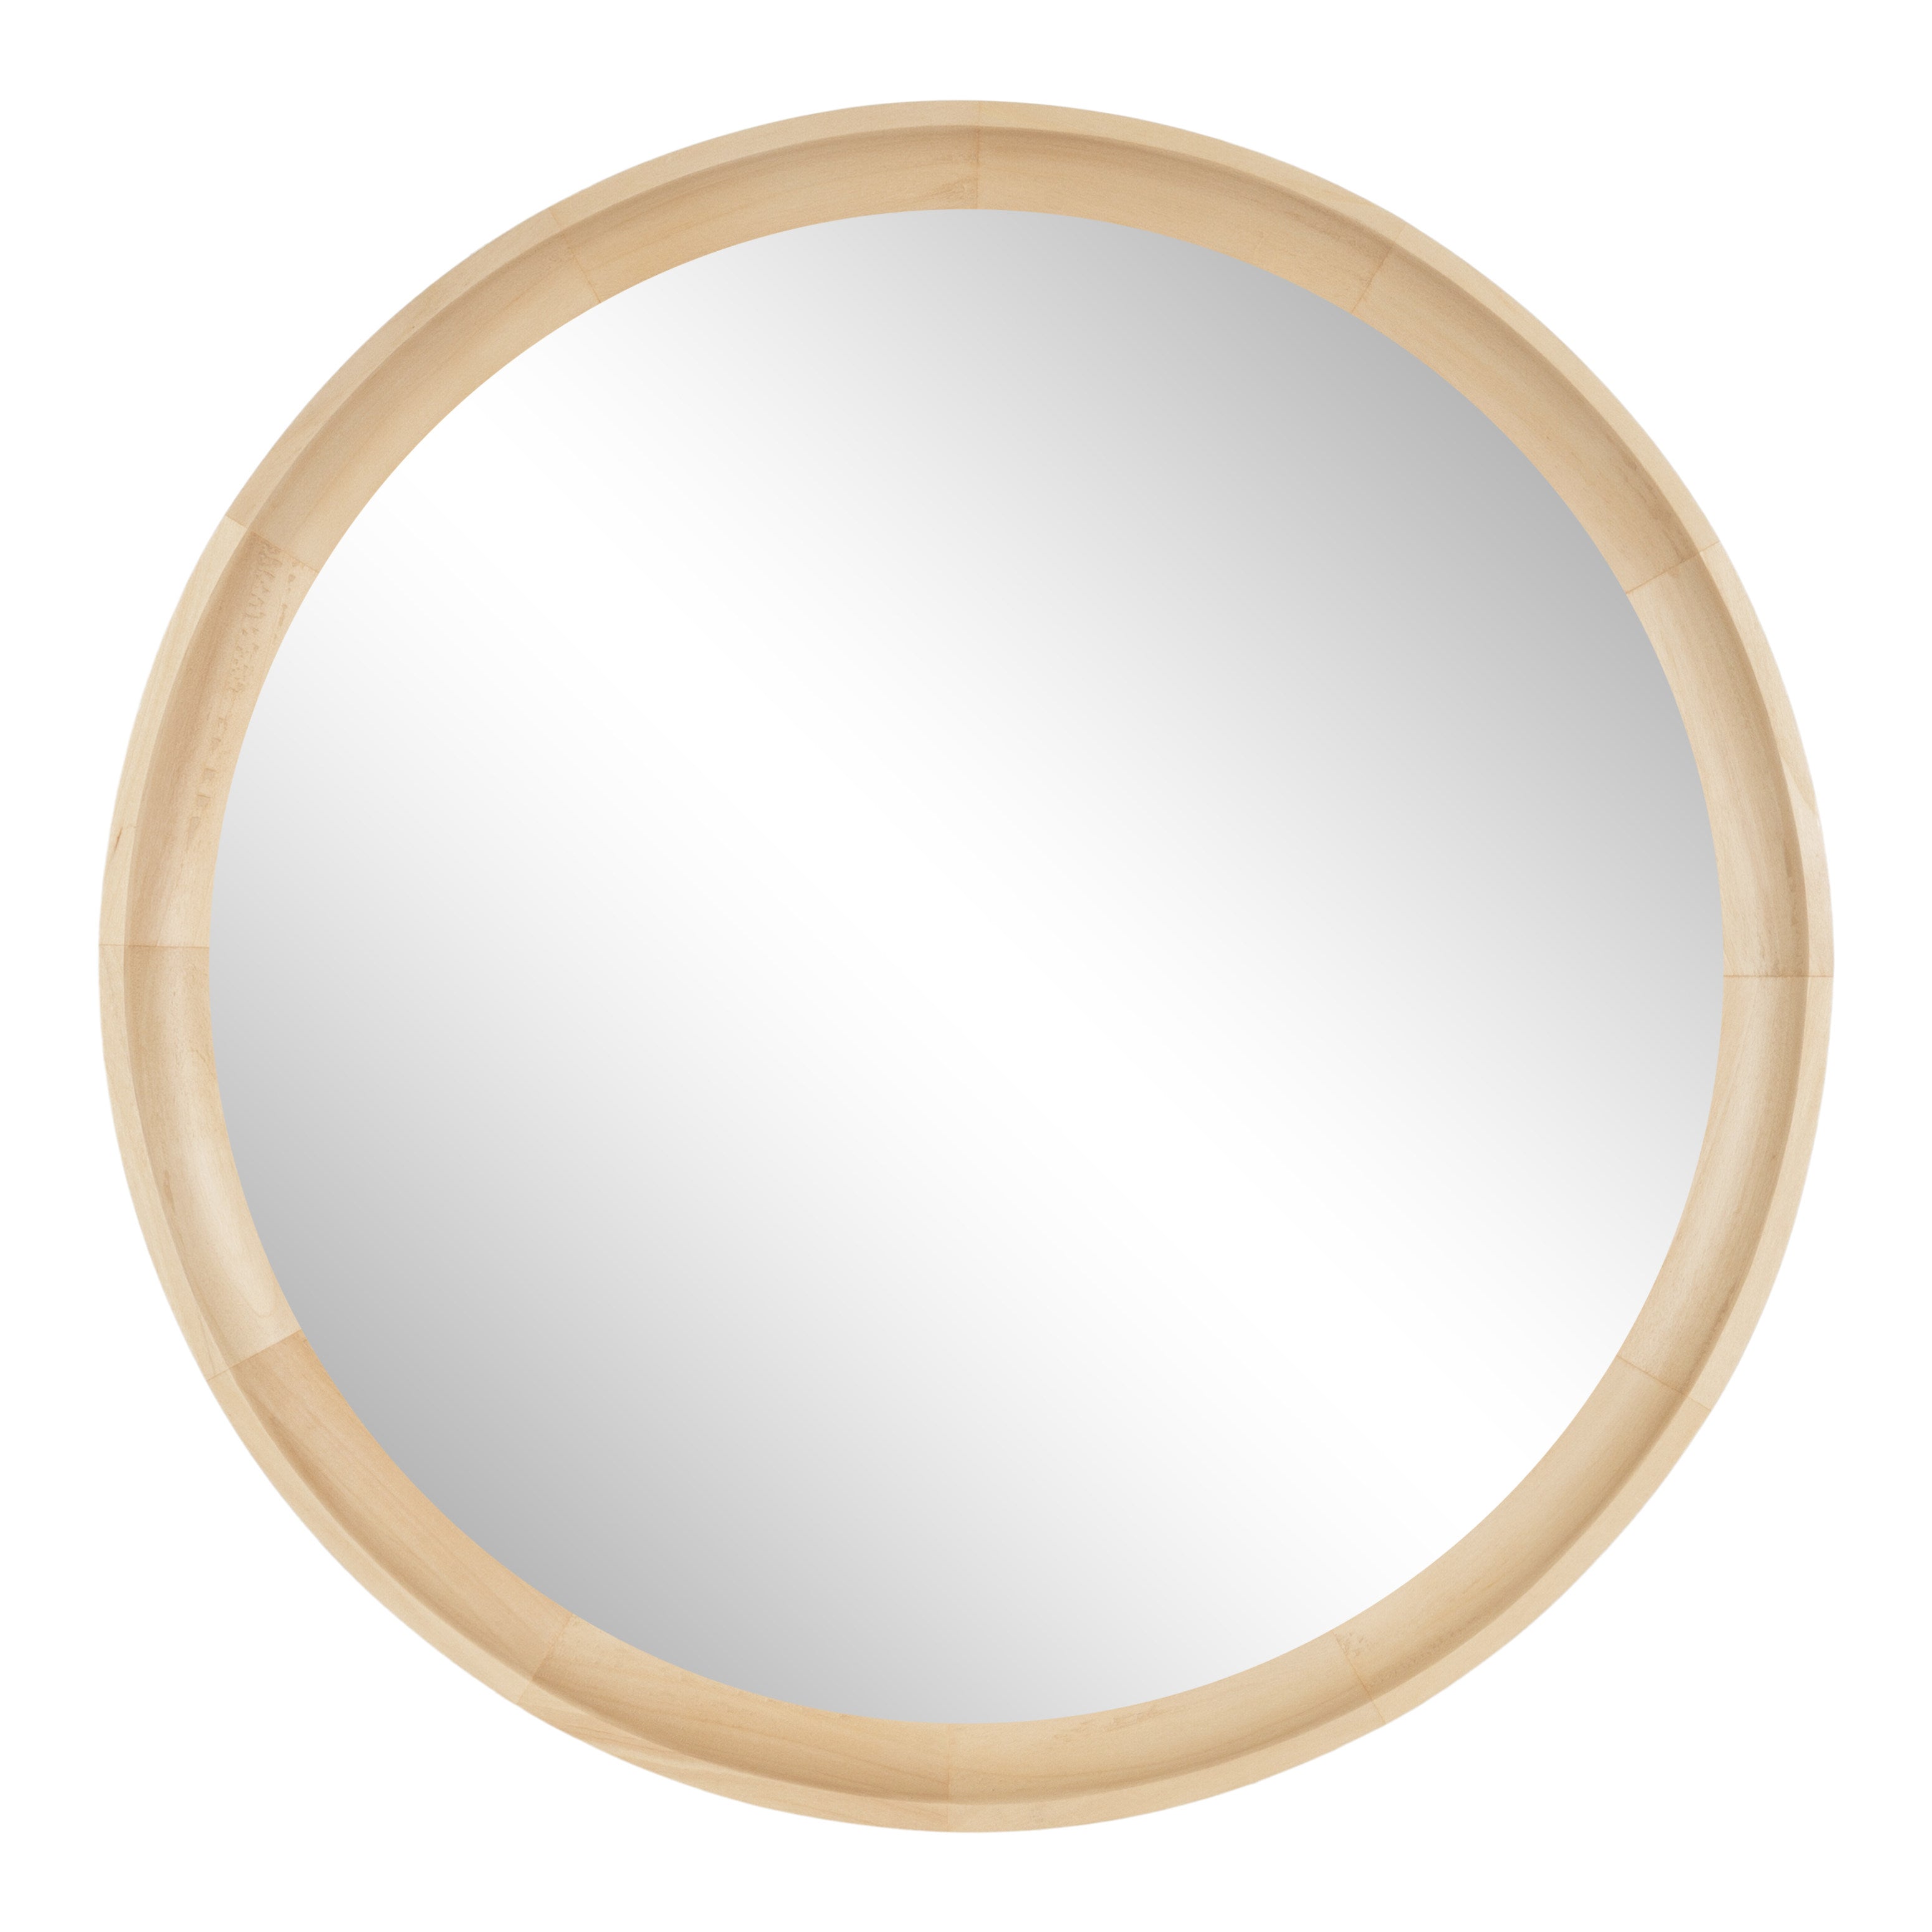 Hatherleigh Round Wall Mirror